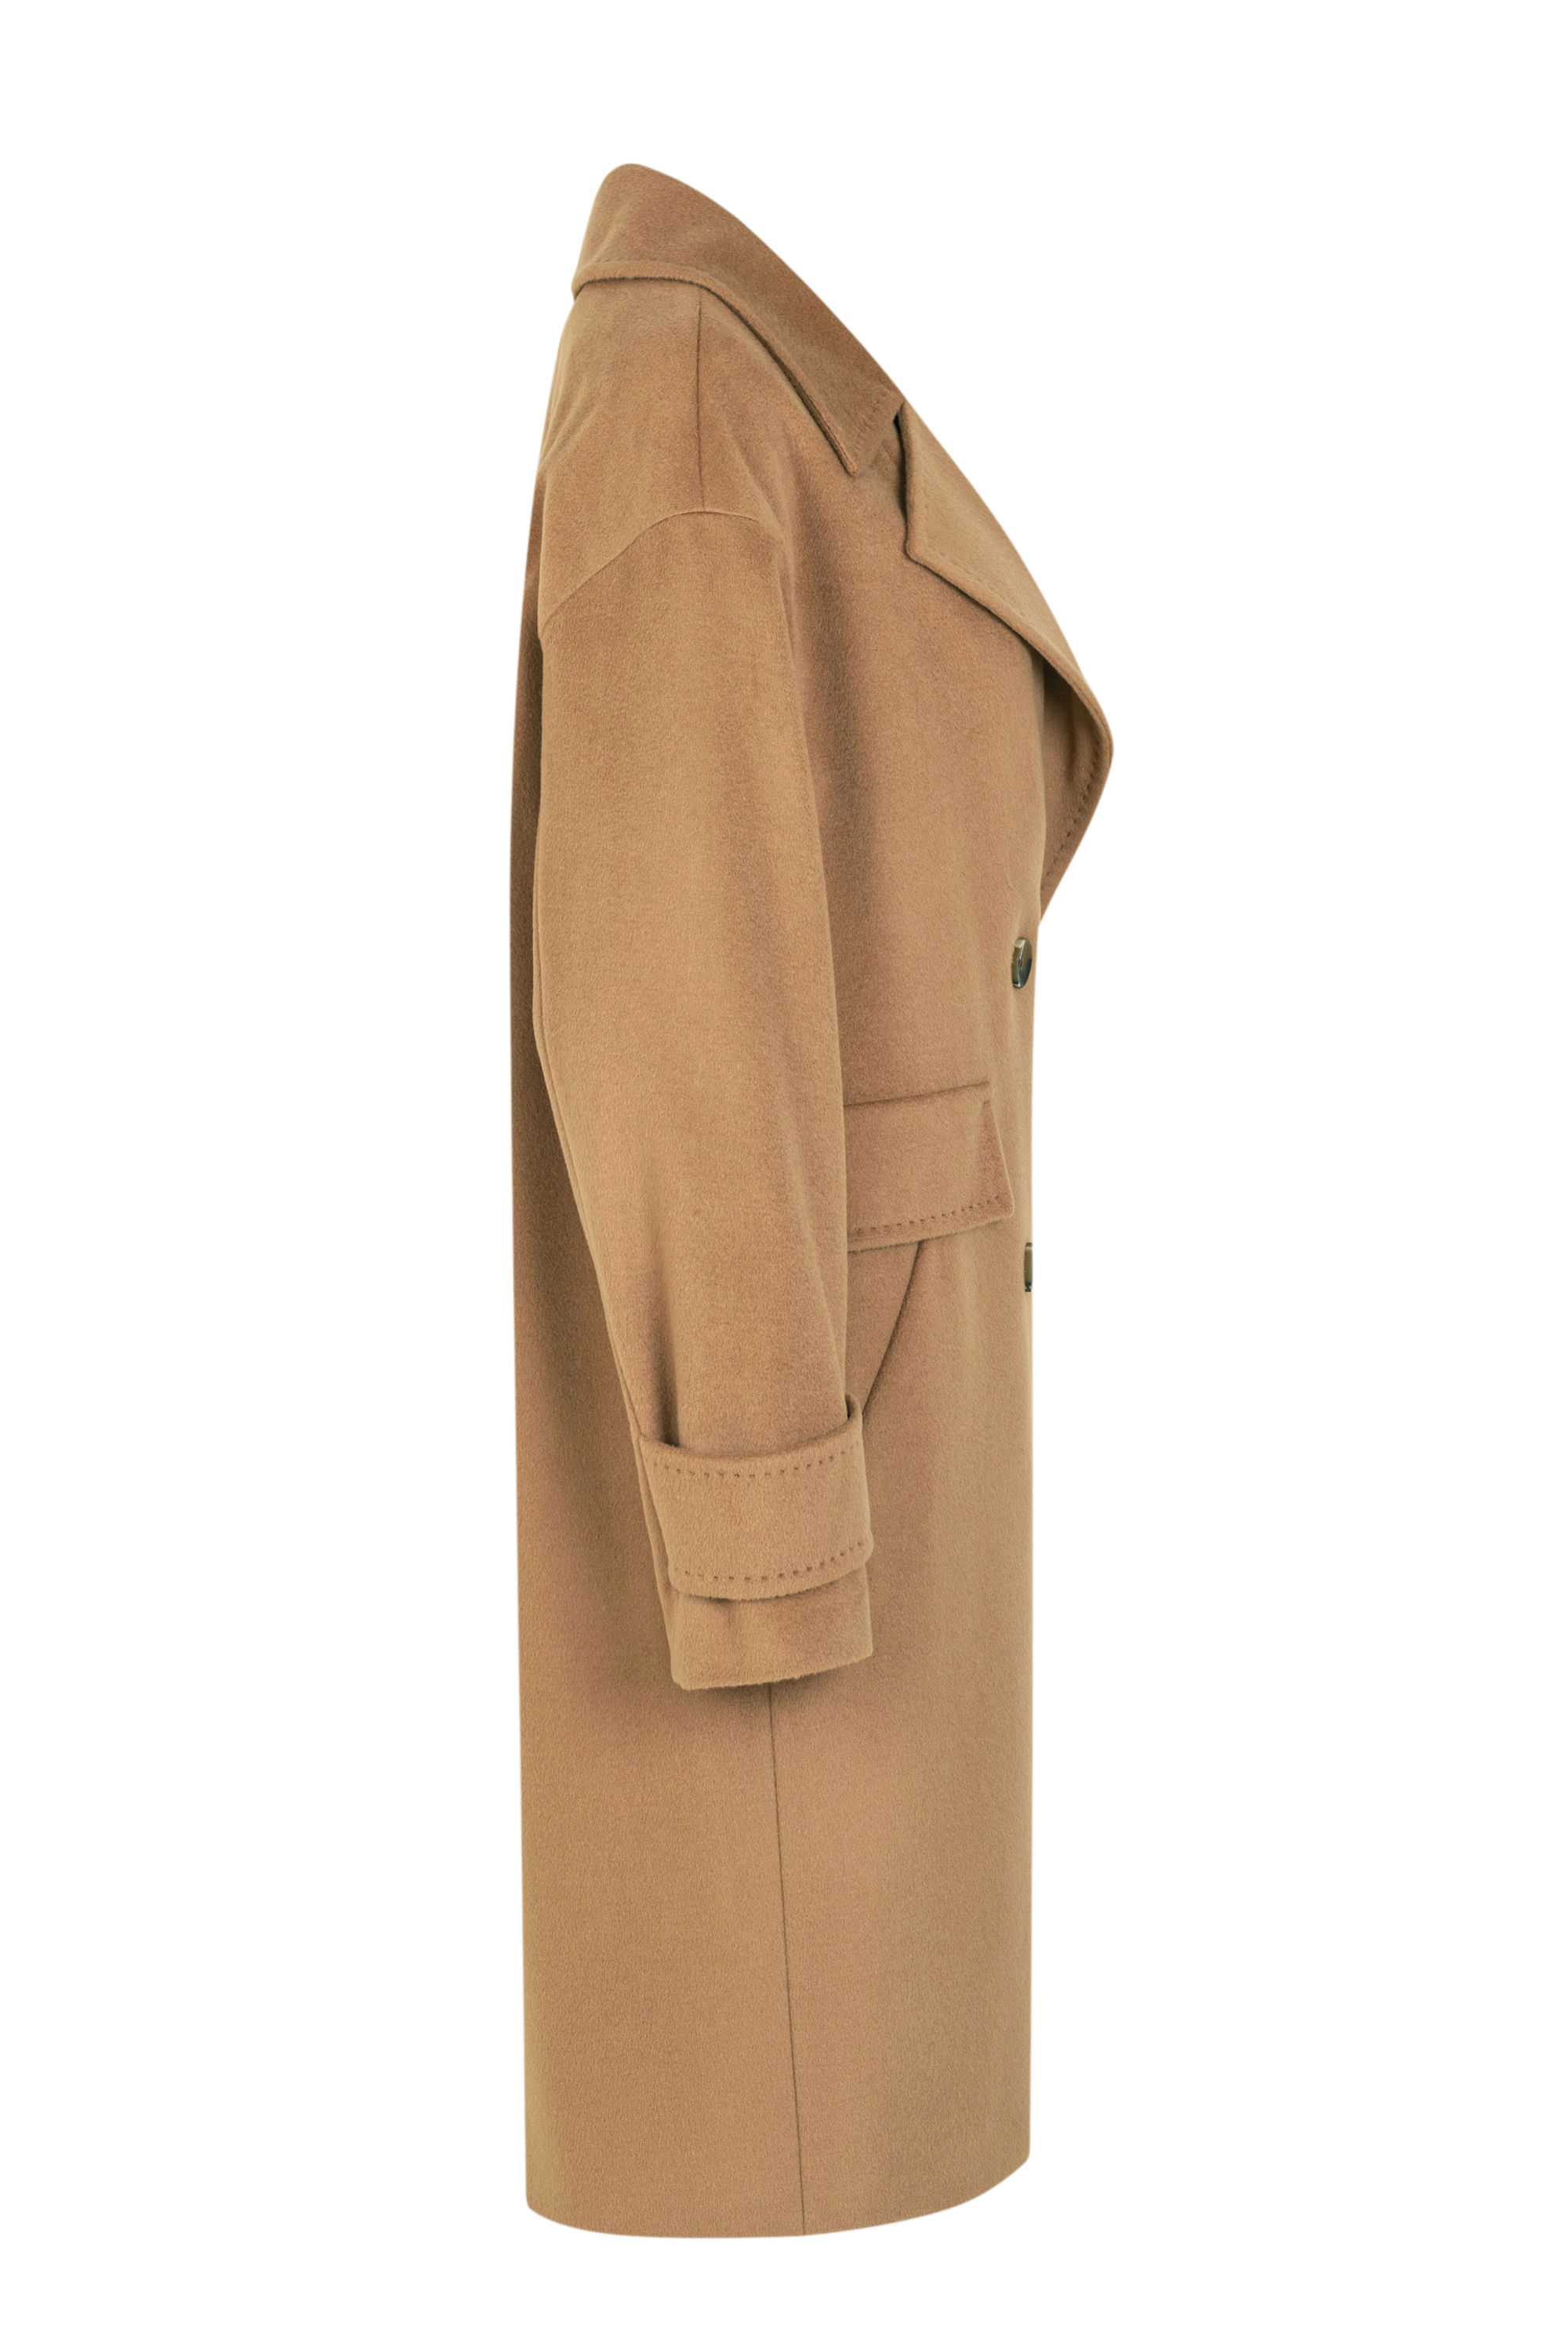 Пальто женское демисезонное 1-13122-1. Фото 2.